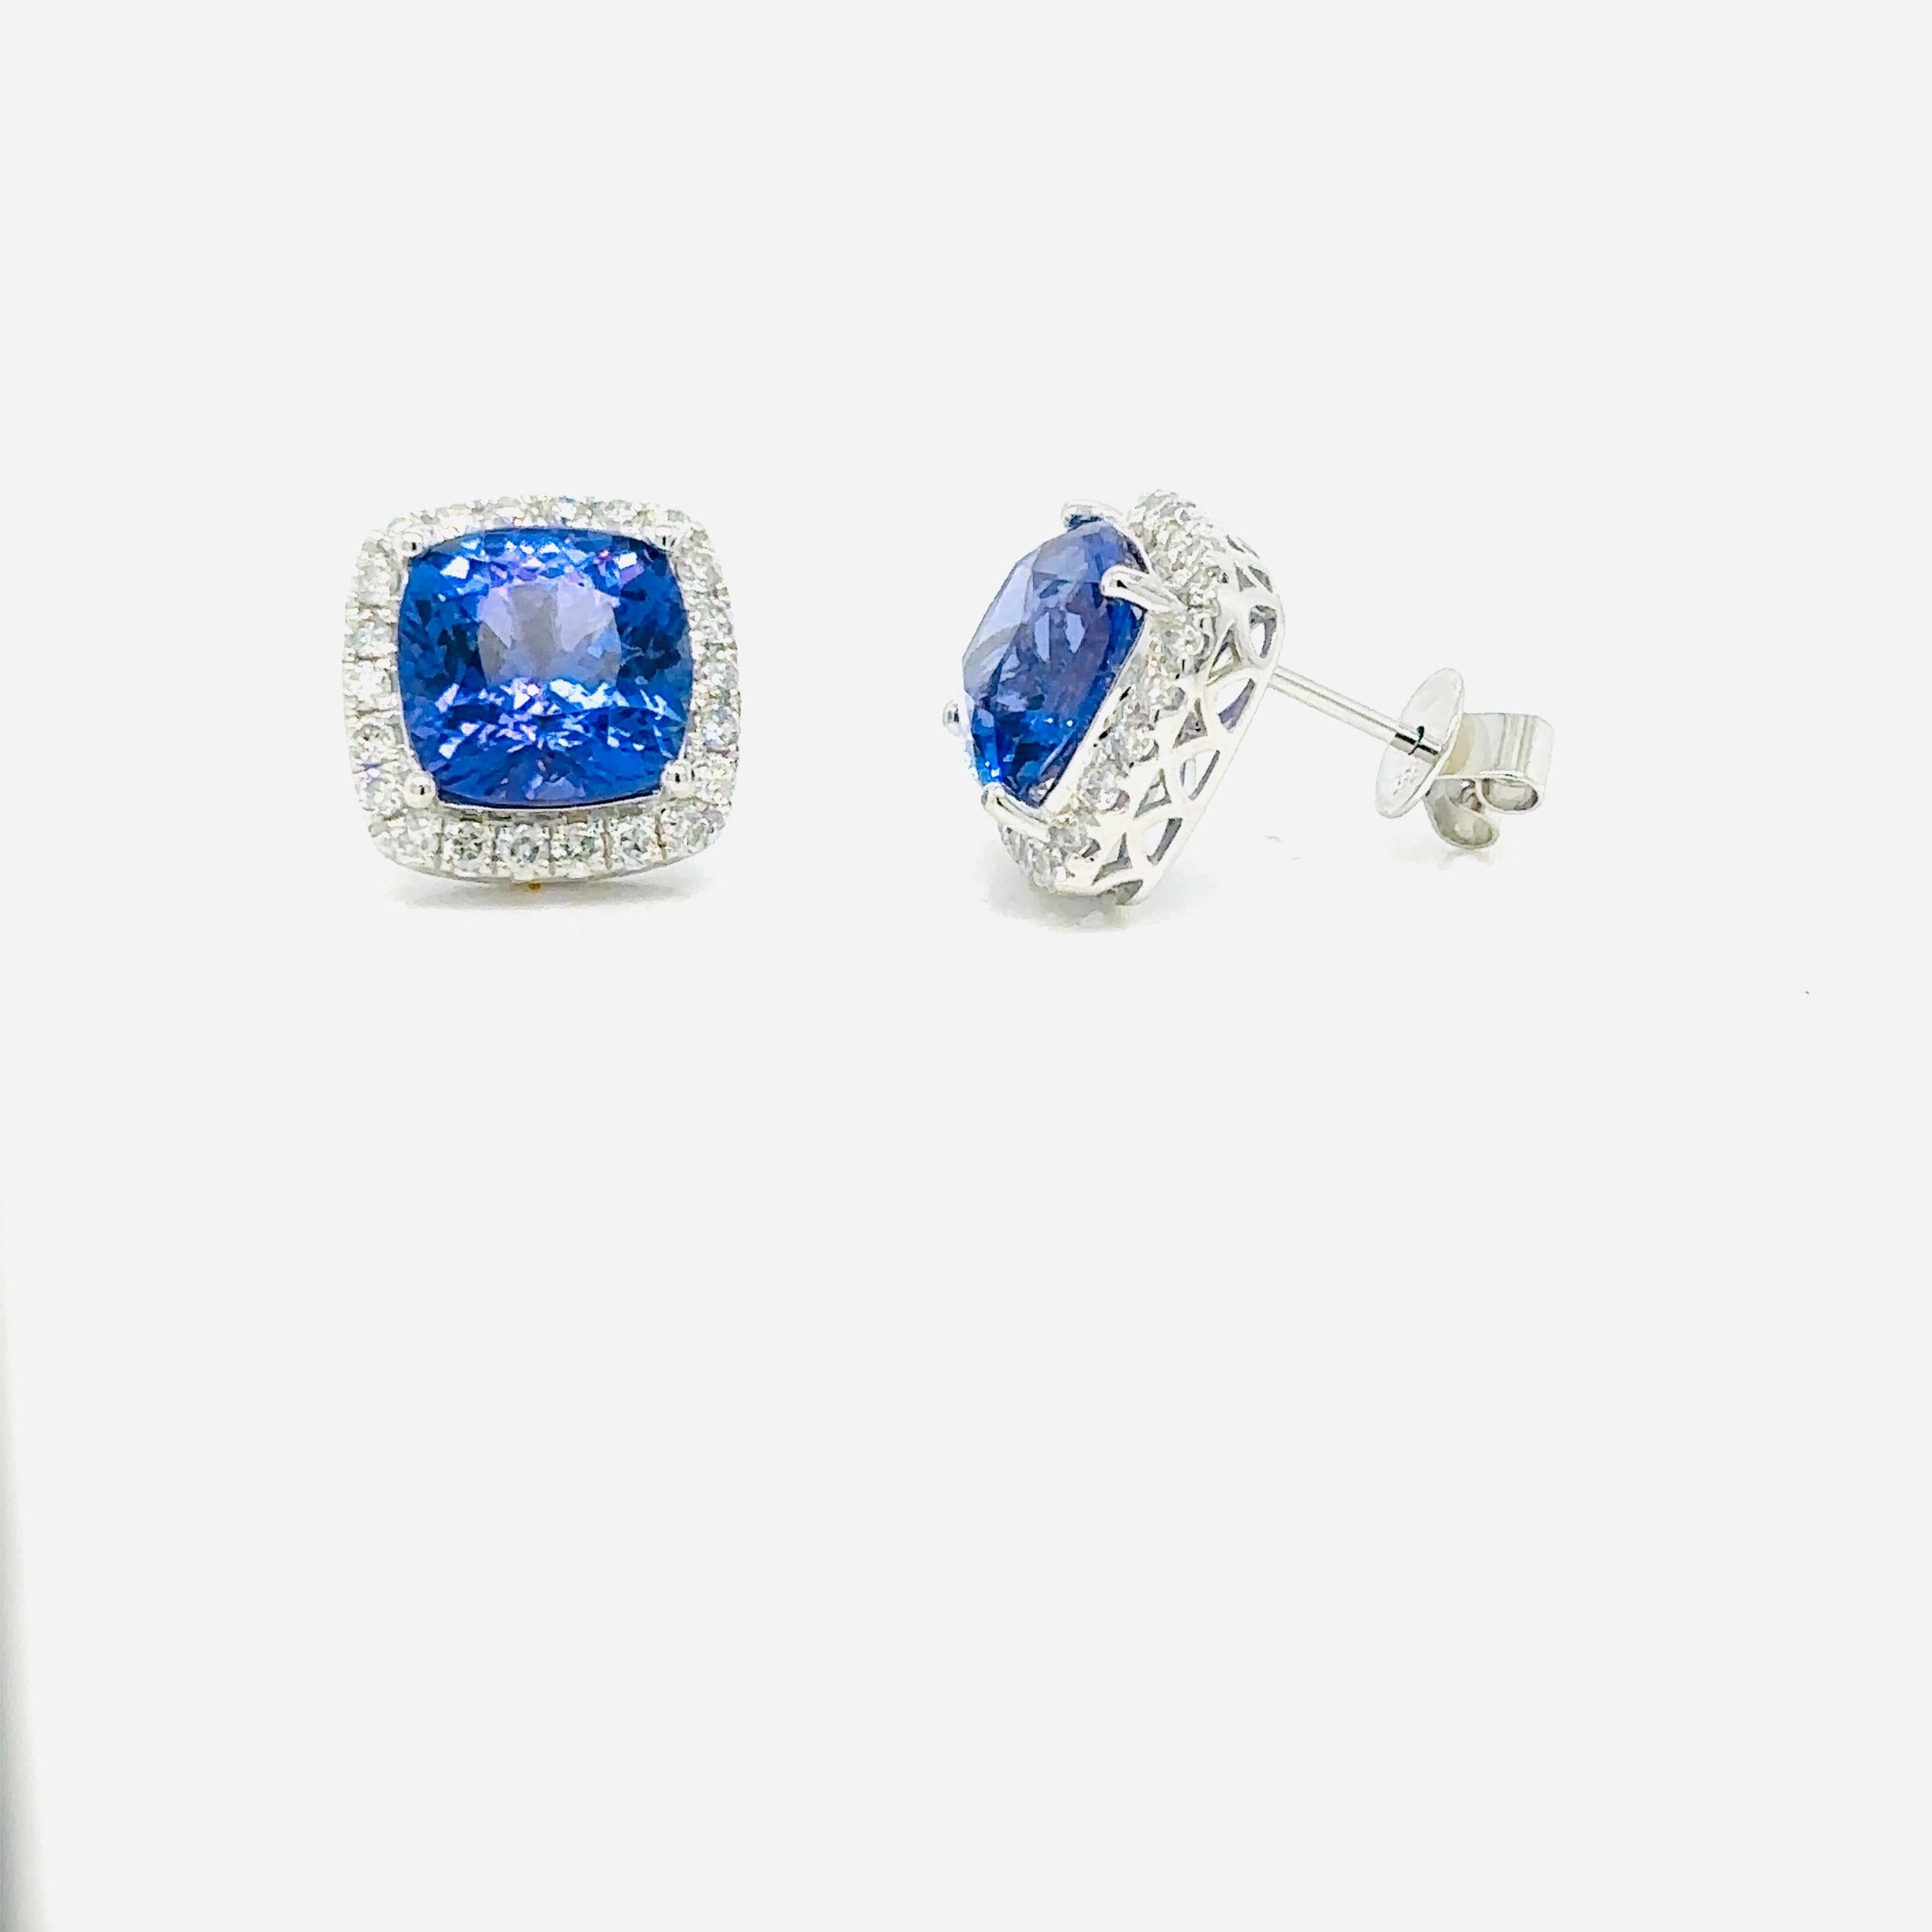 Elegante Tansanit-Ohrringe in Kissenform, eingefasst von runden Diamanten an allen Seiten und Ecken.

Sichern Sie sich Ihr Exemplar noch heute: Begrenzter Vorrat verfügbar. Verpassen Sie nicht die Chance, sich Ihre Tansanit-Diamant-Ohrringe noch